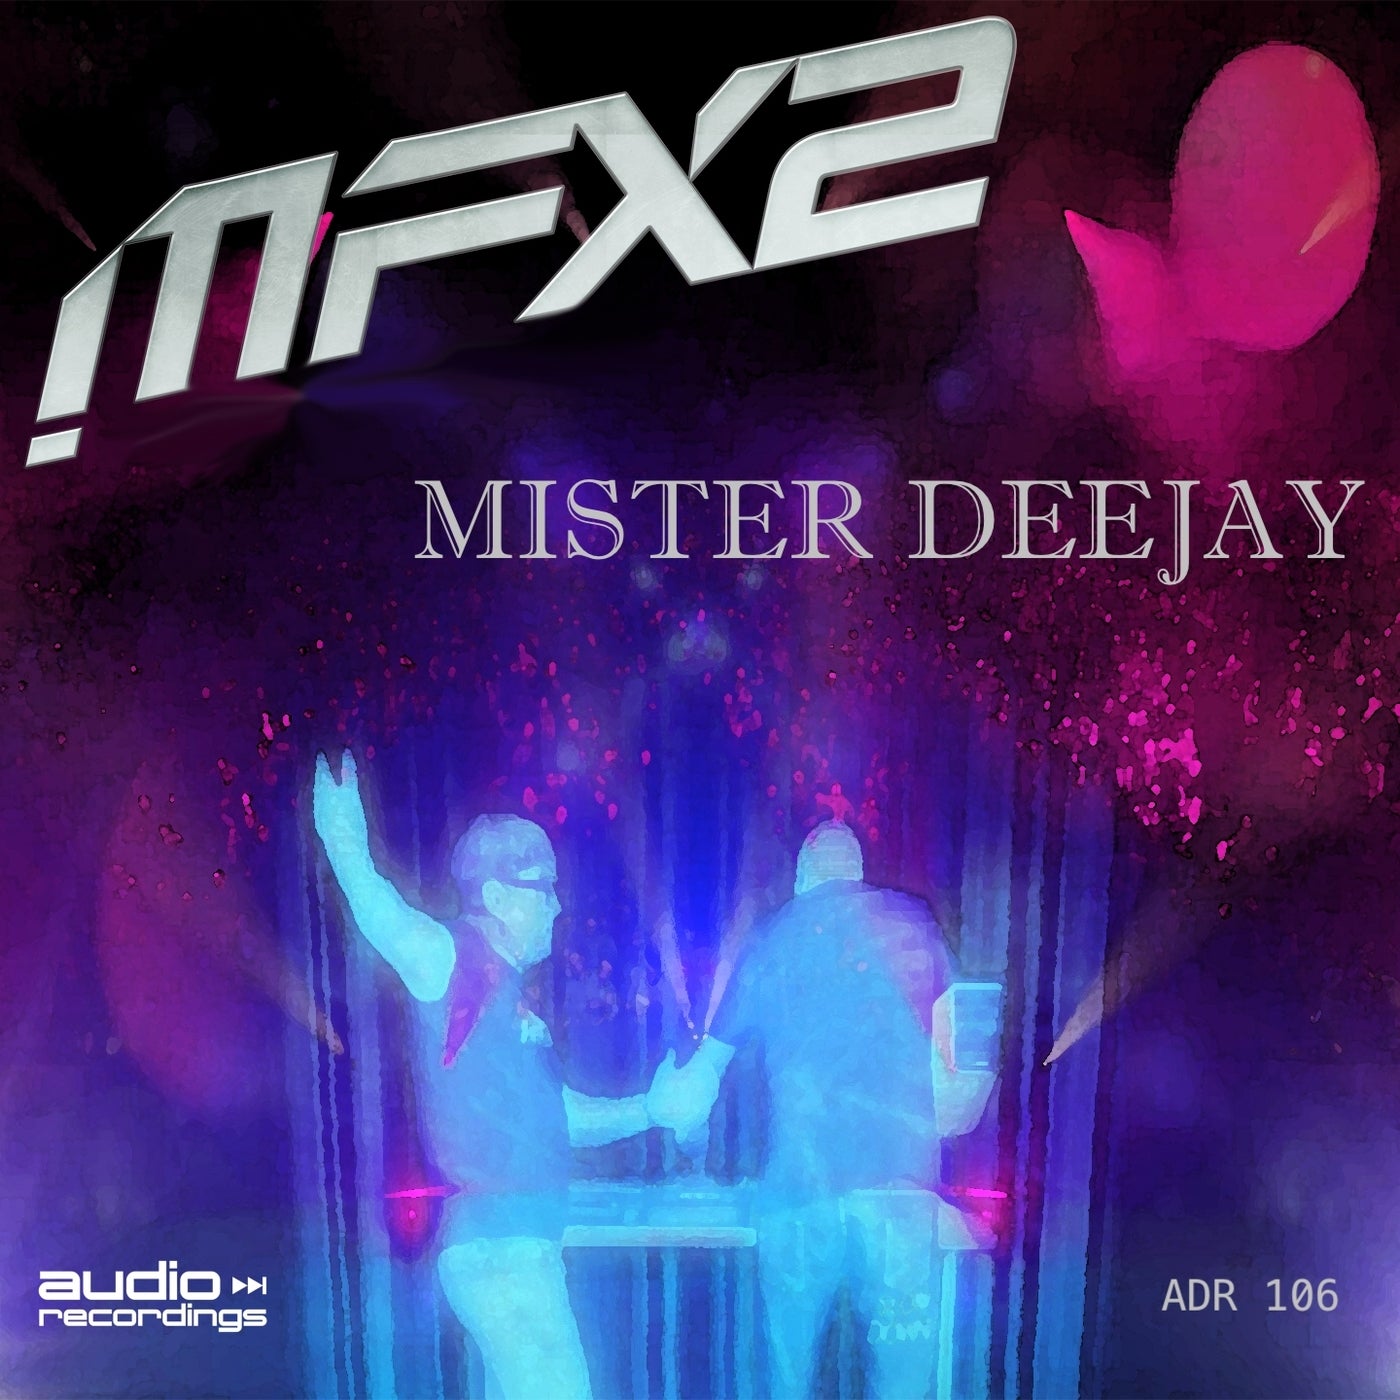 Mister Deejay (Club Mix)